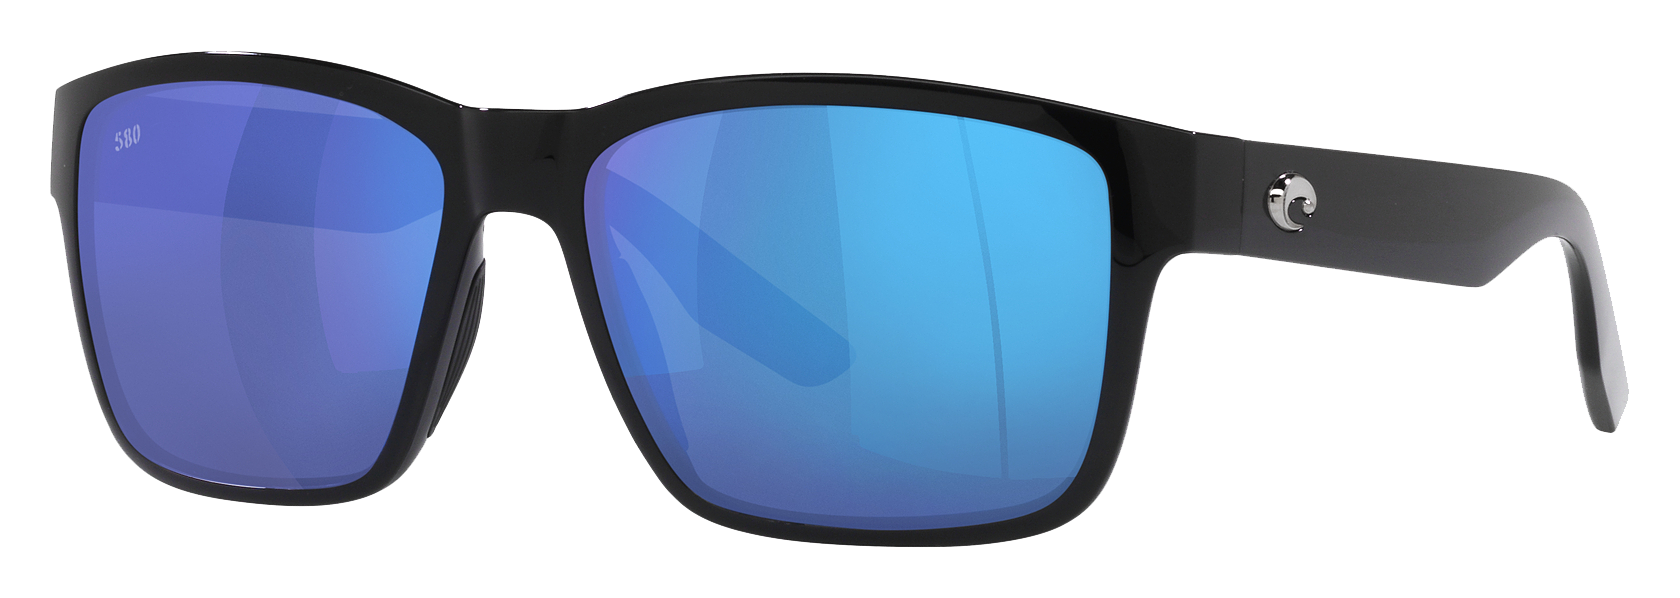 Costa Del Mar Paunch 580G Glass Polarized Sunglasses